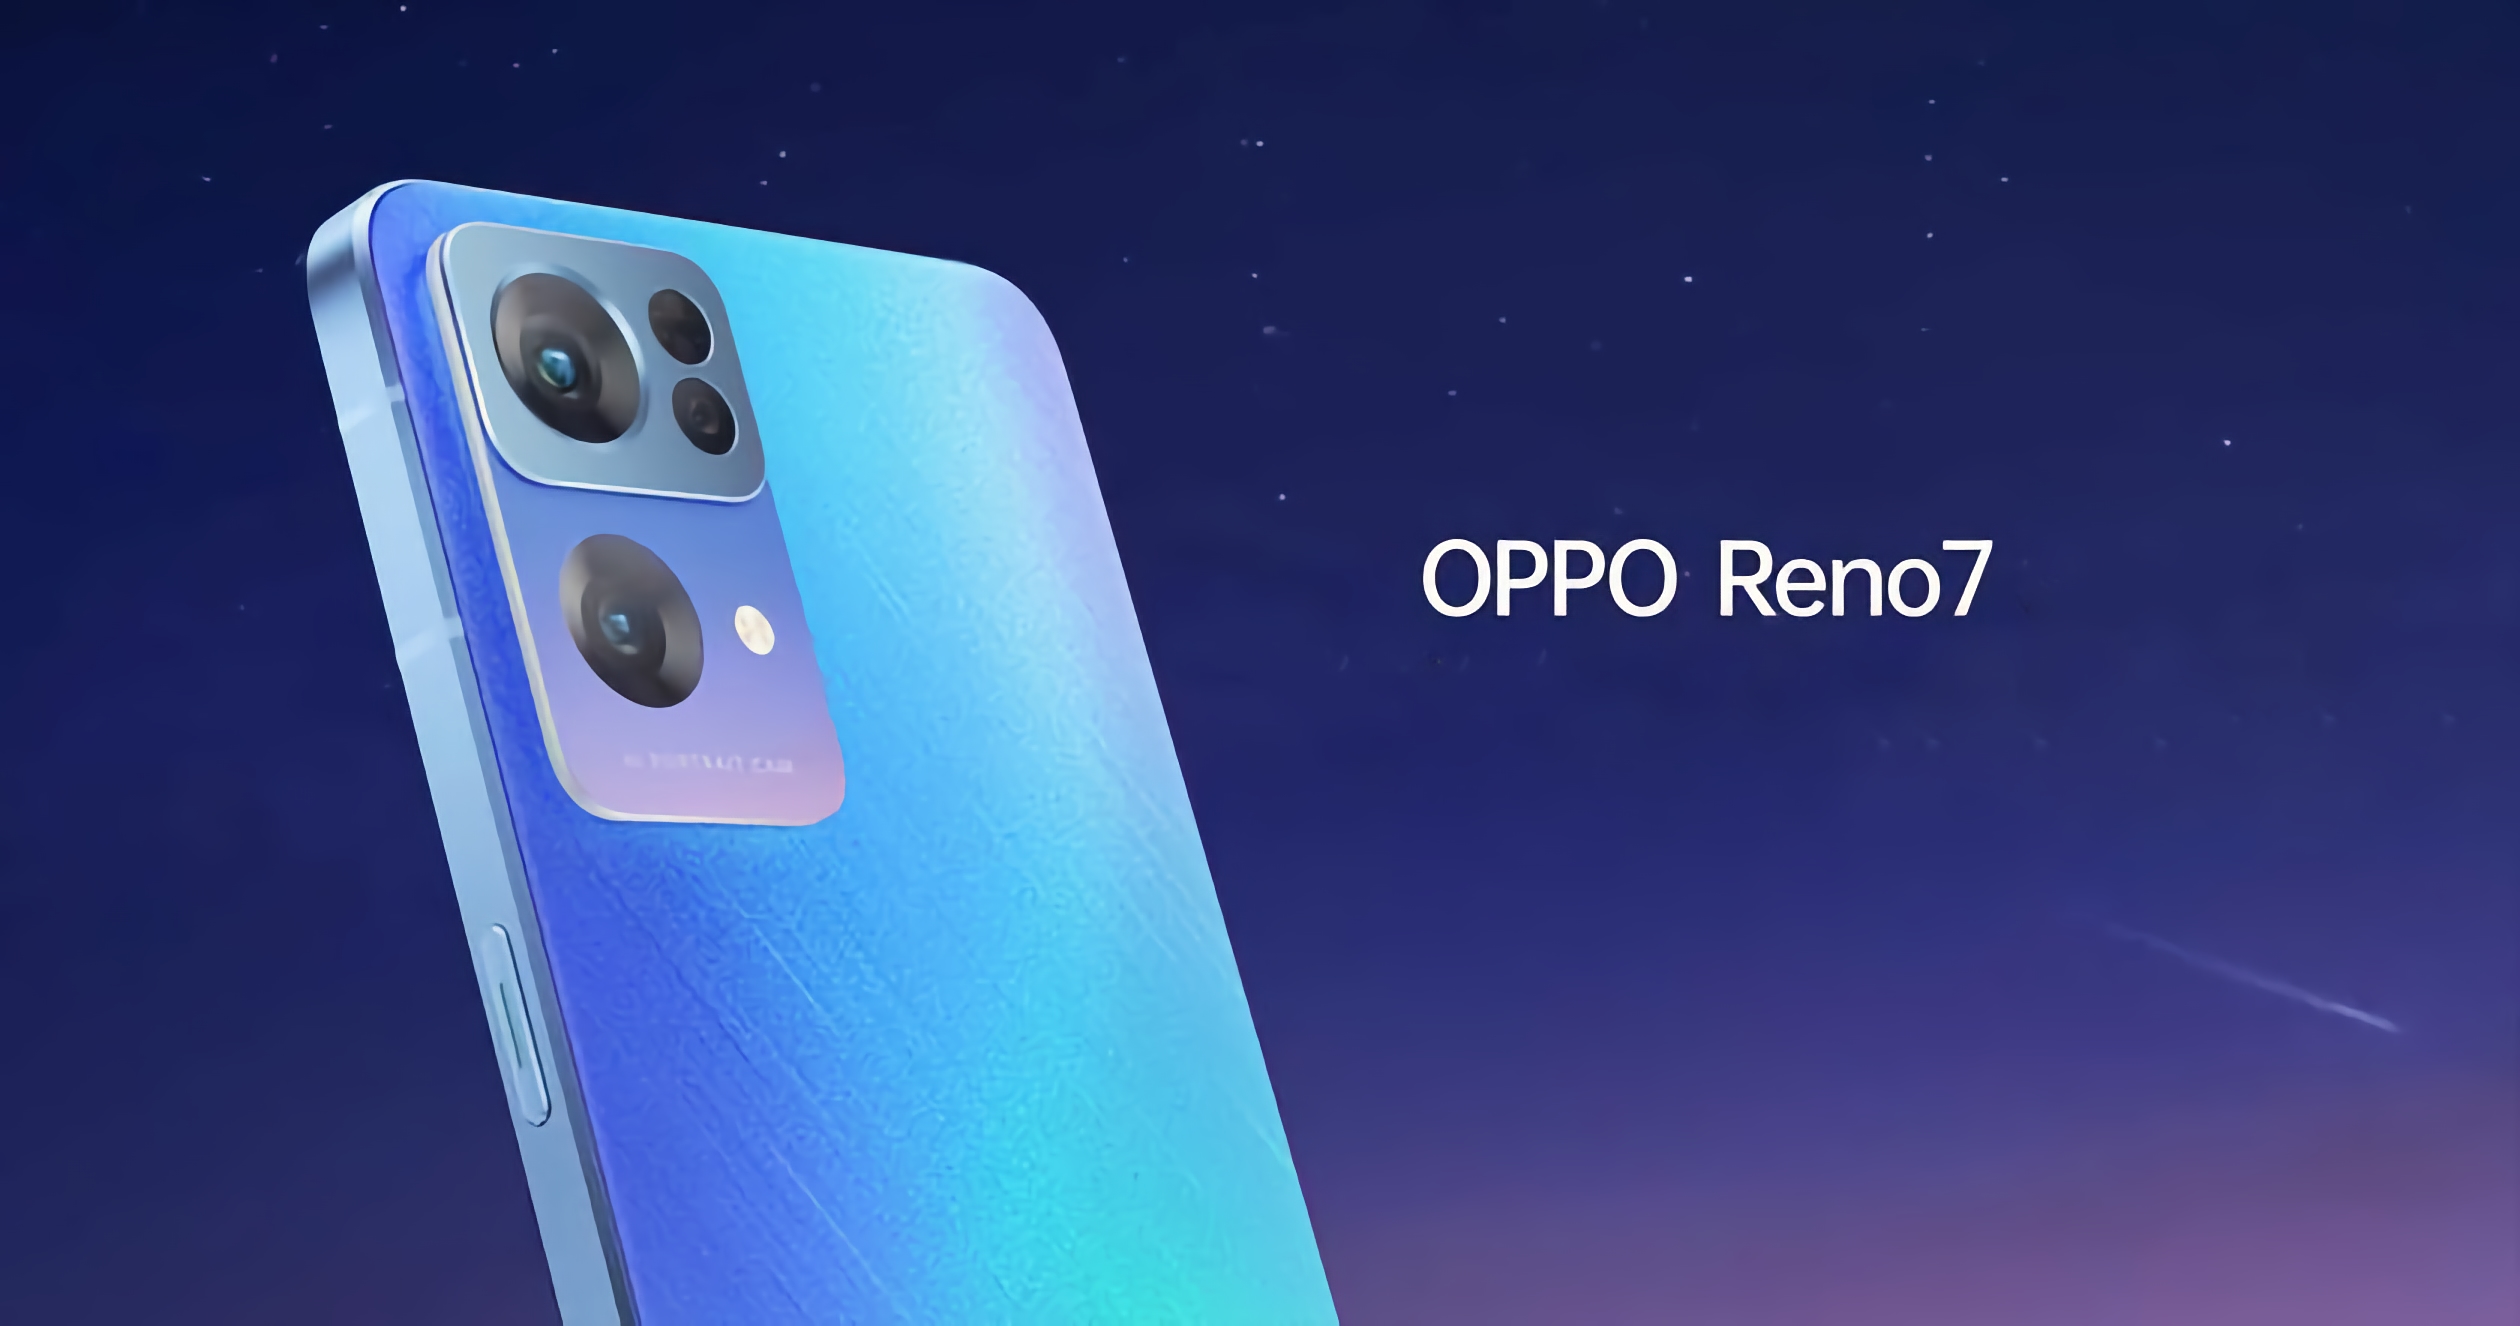 3 jours avant l'annonce: images et caractéristiques des smartphones OPPO Reno 7, OPPO Reno 7 Pro et OPPO Reno 7 SE divulgués sur le réseau